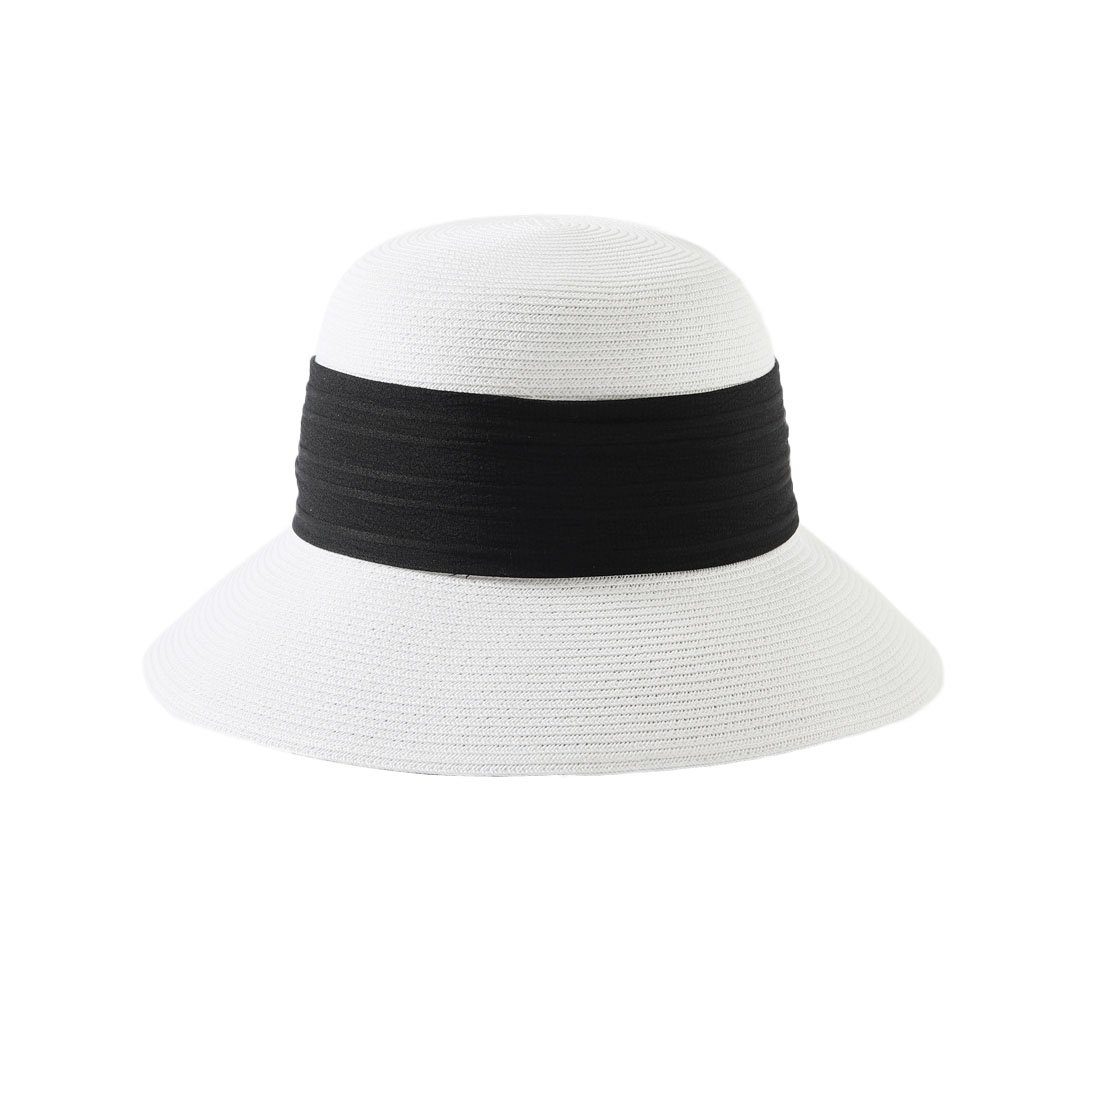 SCHUTA Sonnenhut Strohhut Sonnenhut Damen,Sommer Strand Hüte Hut UV Schutz Kappe Weiß01